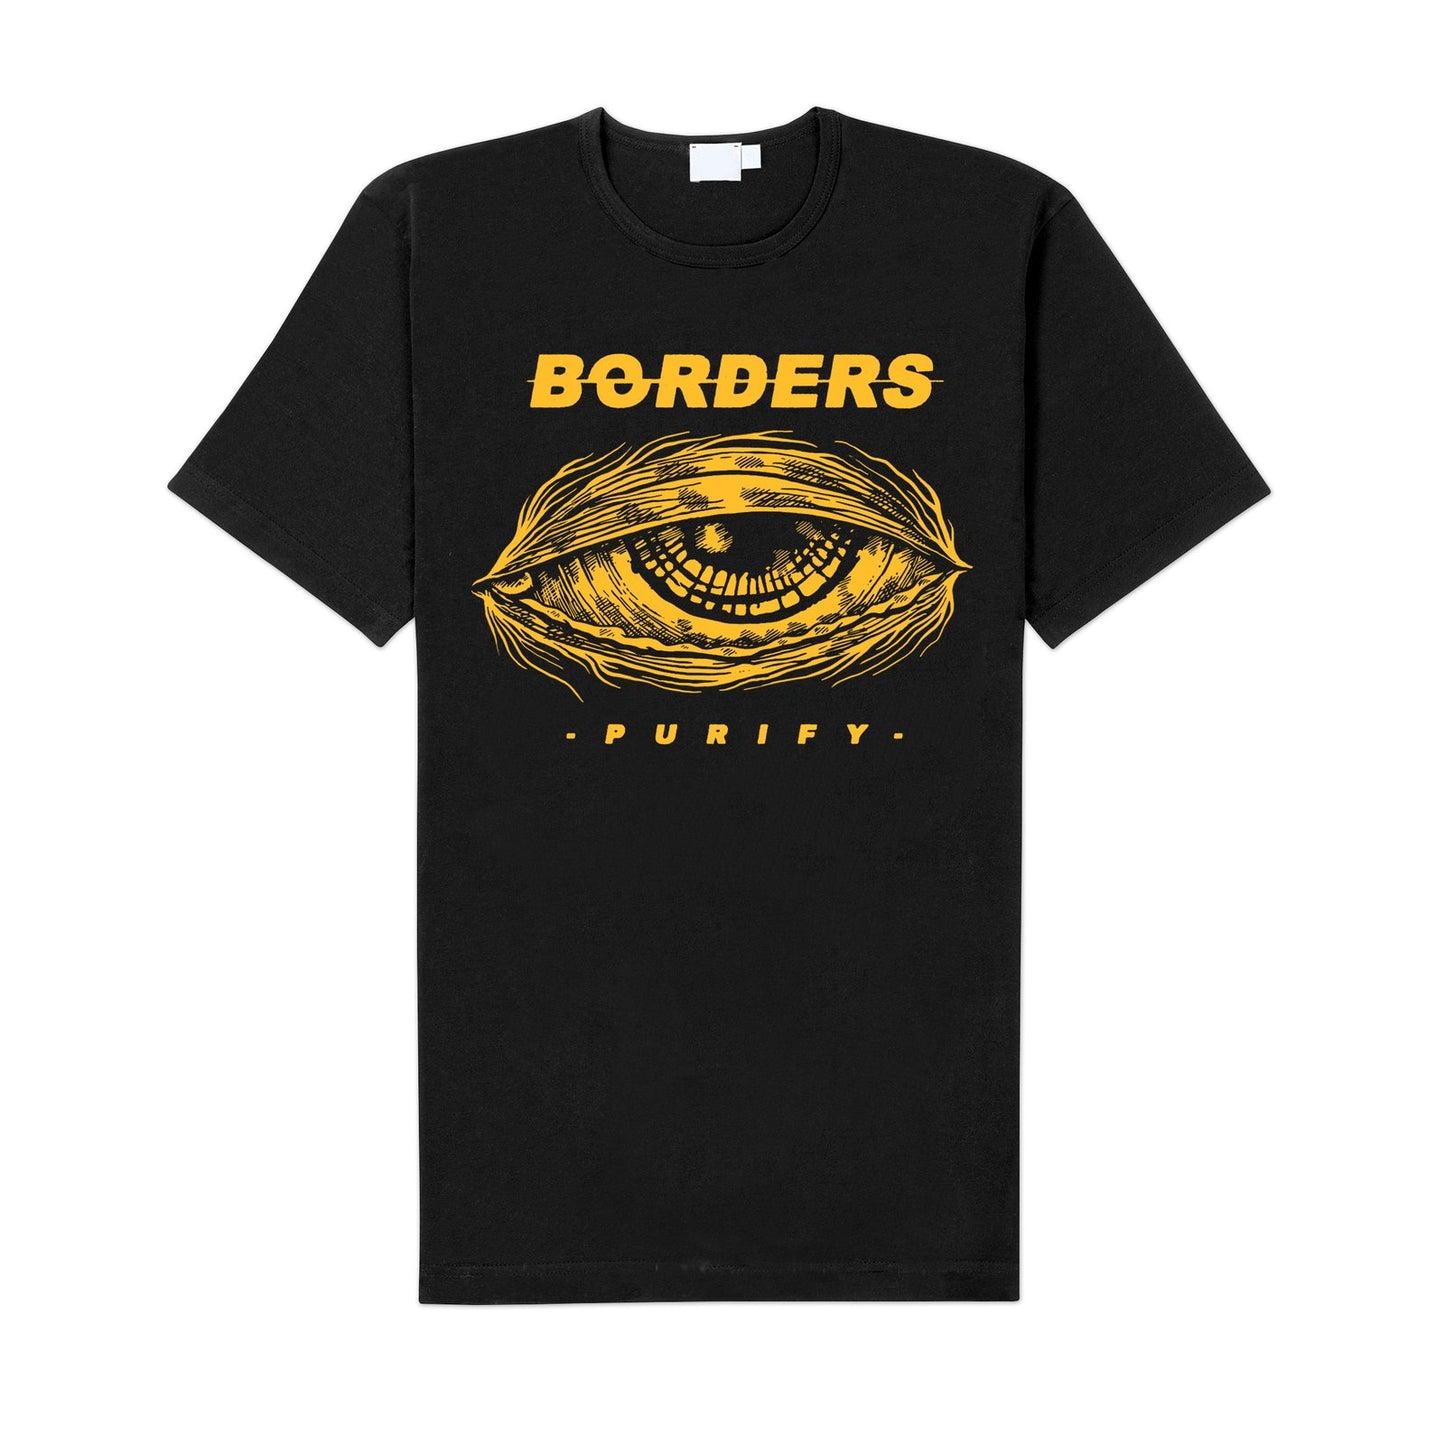 Borders "Purify" LP-Bundle "Purif-Eye"